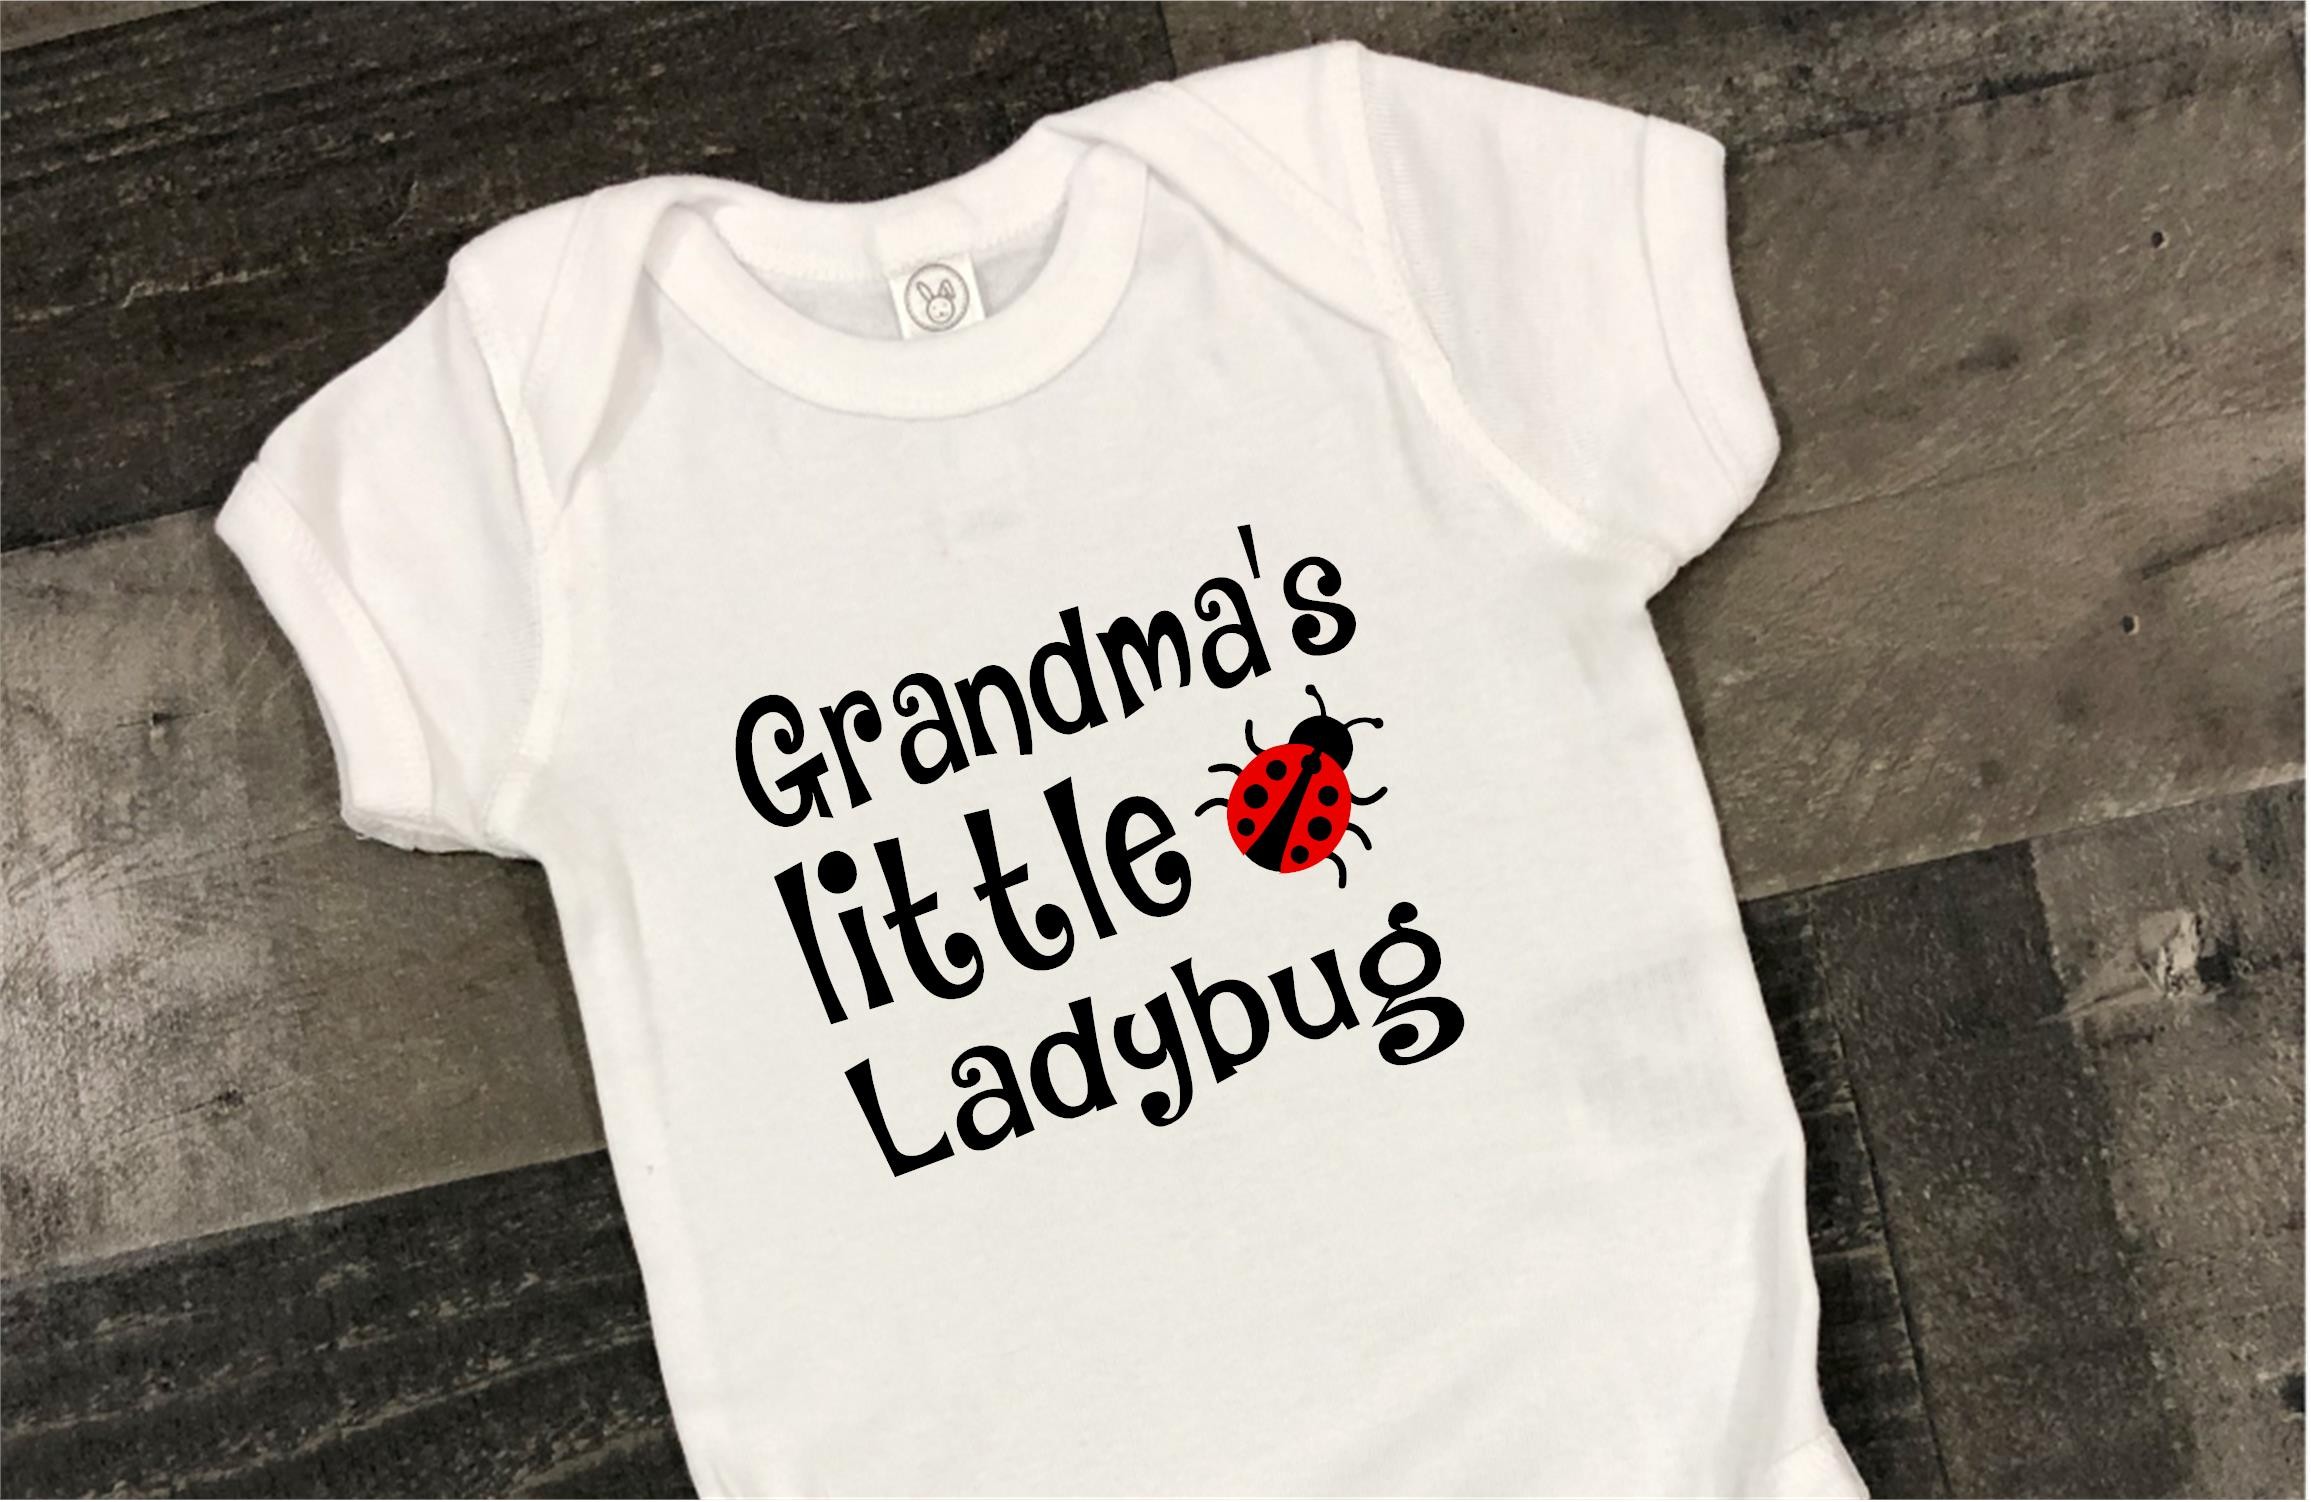 Grandma's little ladybug